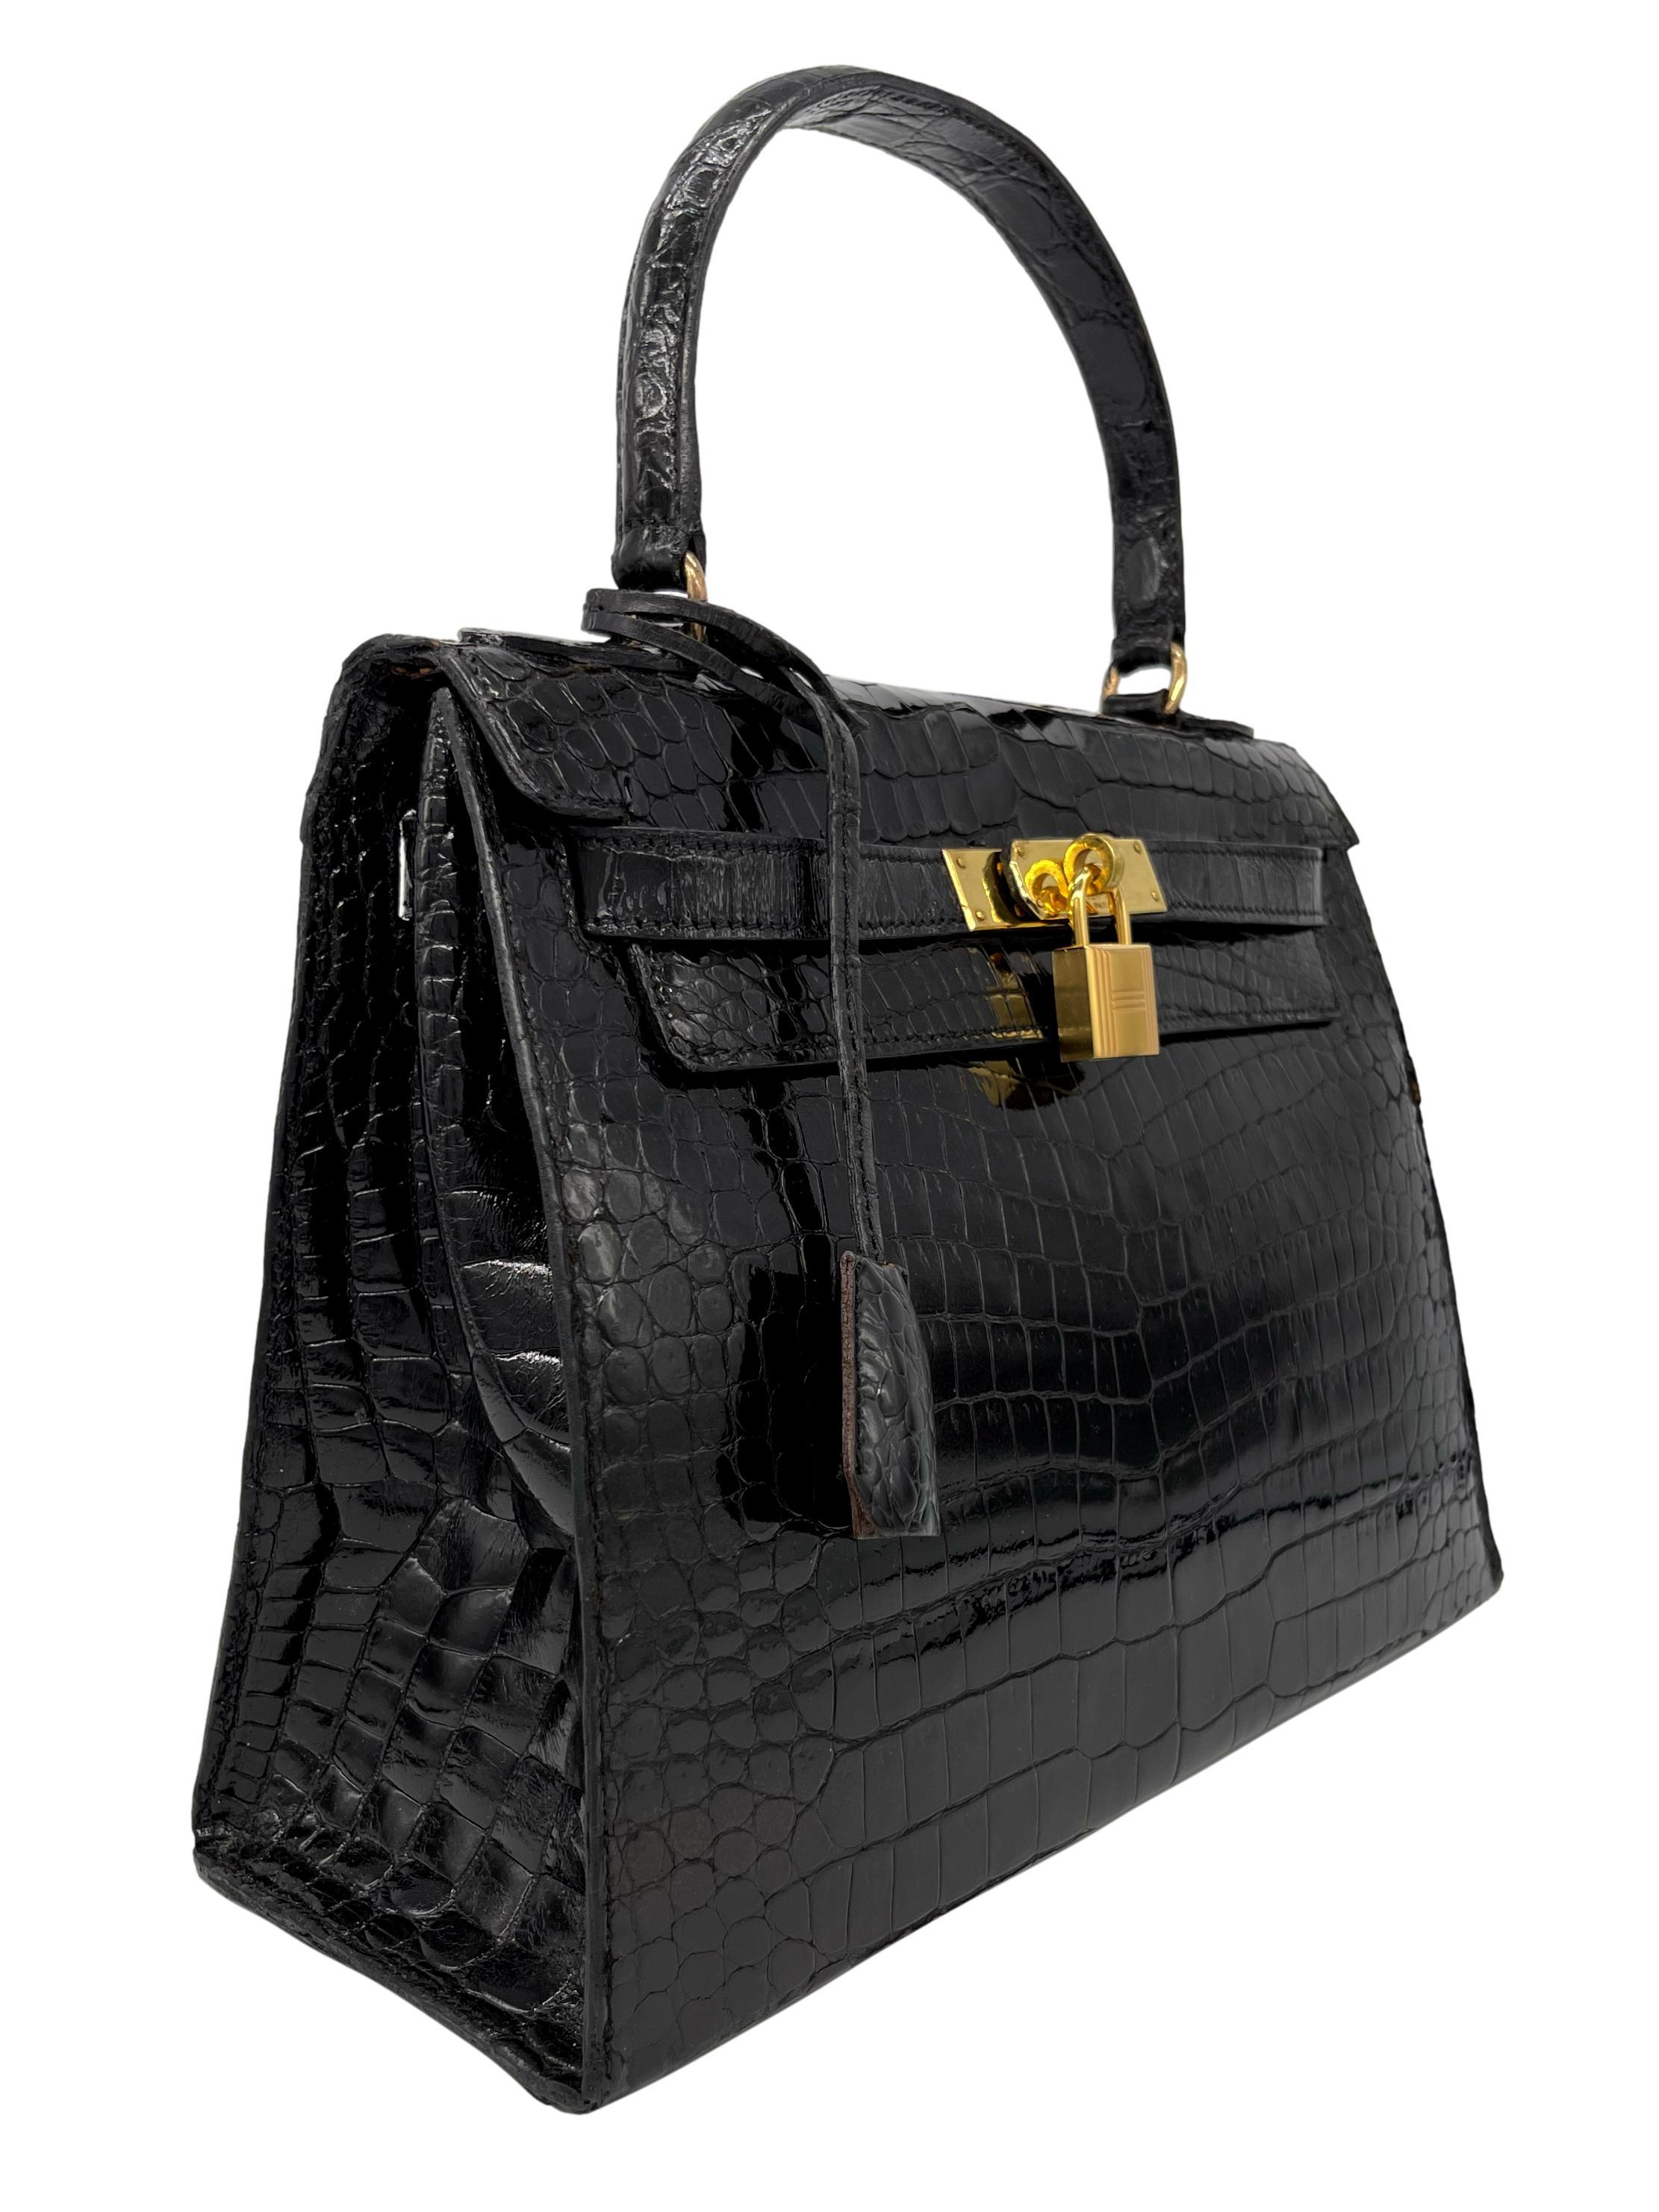 Hermès Rare Vintage glänzend schwarz Porosus Krokodil Kelly Handtasche mit Gold Hardware 28cm, 1940. Ursprünglich in den frühen 1930er Jahren als Sac à dépêches eingeführt, wurde die Kelly weltberühmt, nachdem Grace Kelly, Fürstin von Monaco, auf